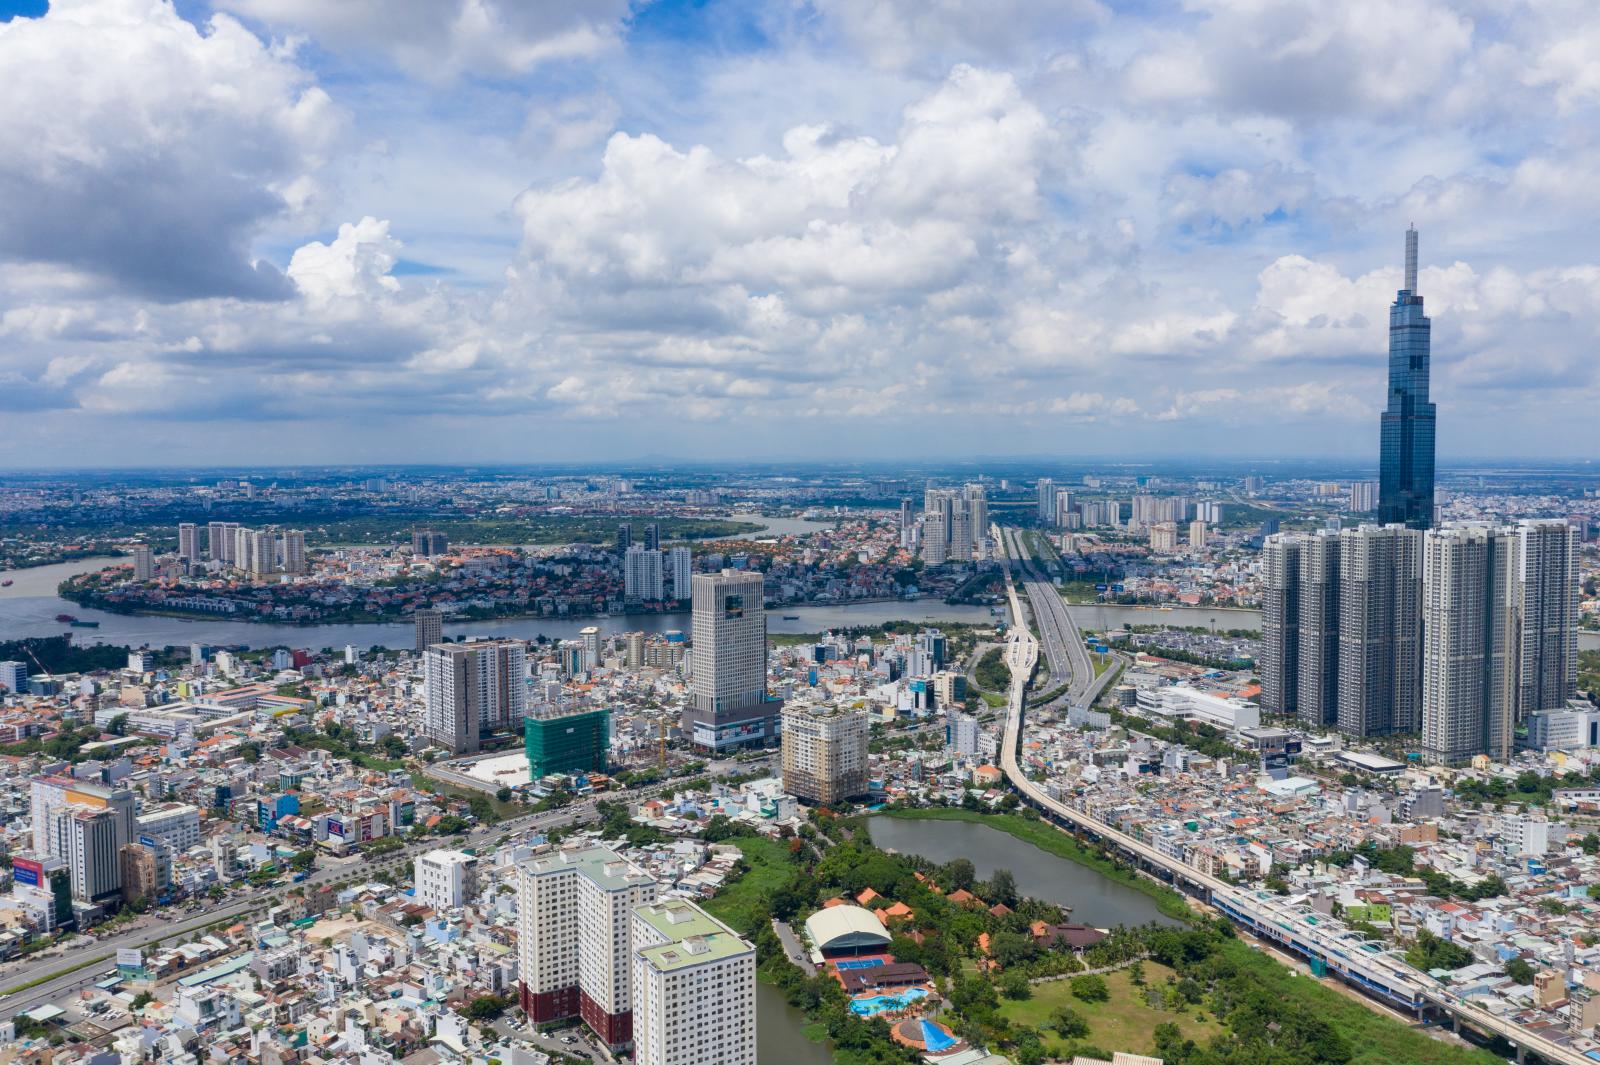 Khoảng trống qua lớn giữa cung va cầu tại thị trường Hồ Chí Minh